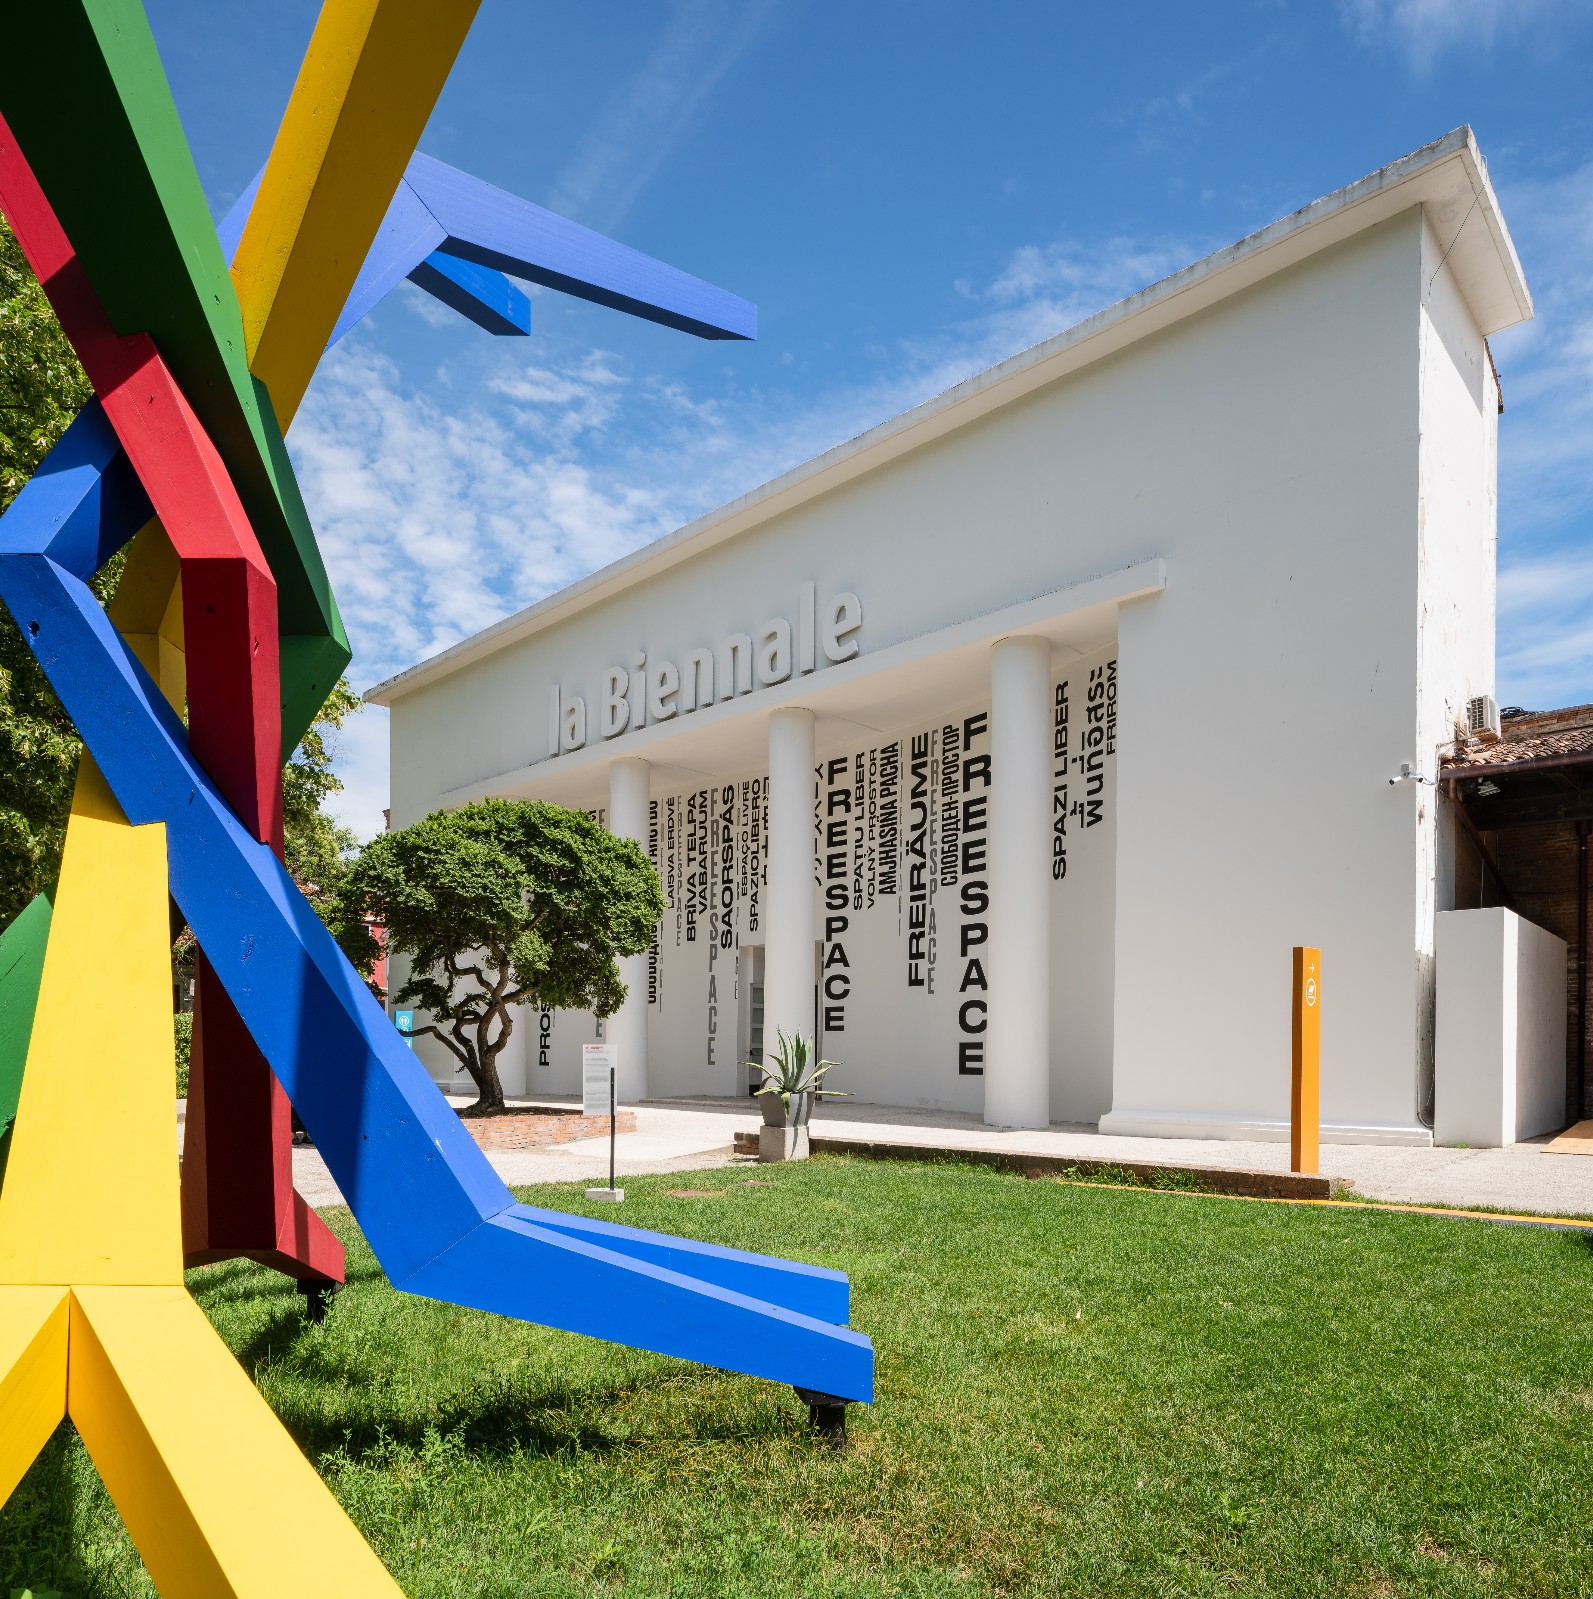 The 16th International Architecture Exhibition - La Biennale di Venezia